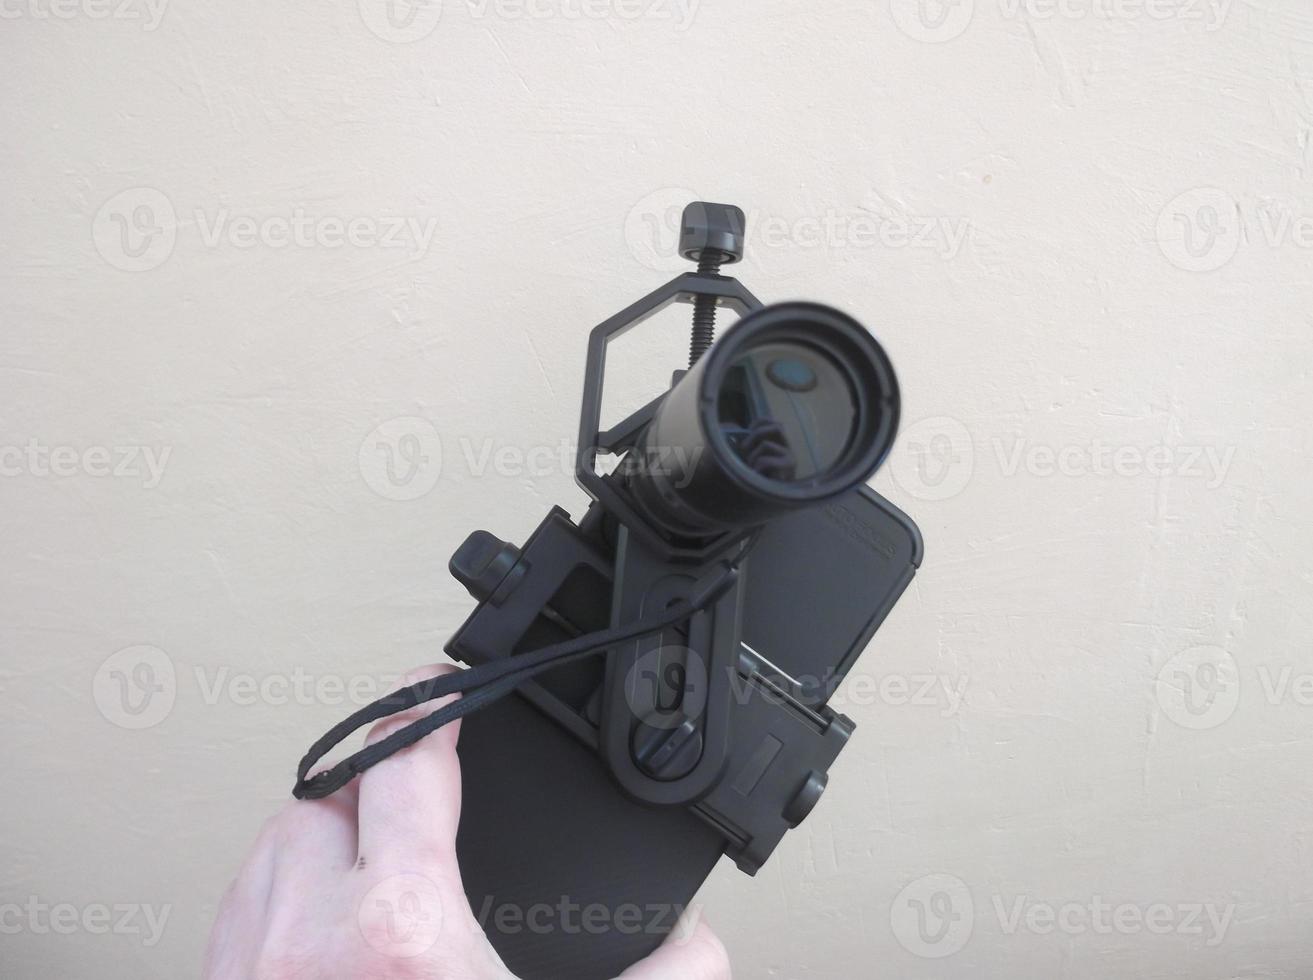 fixation entre télescope monoculaire et smartphone sur trépied photo